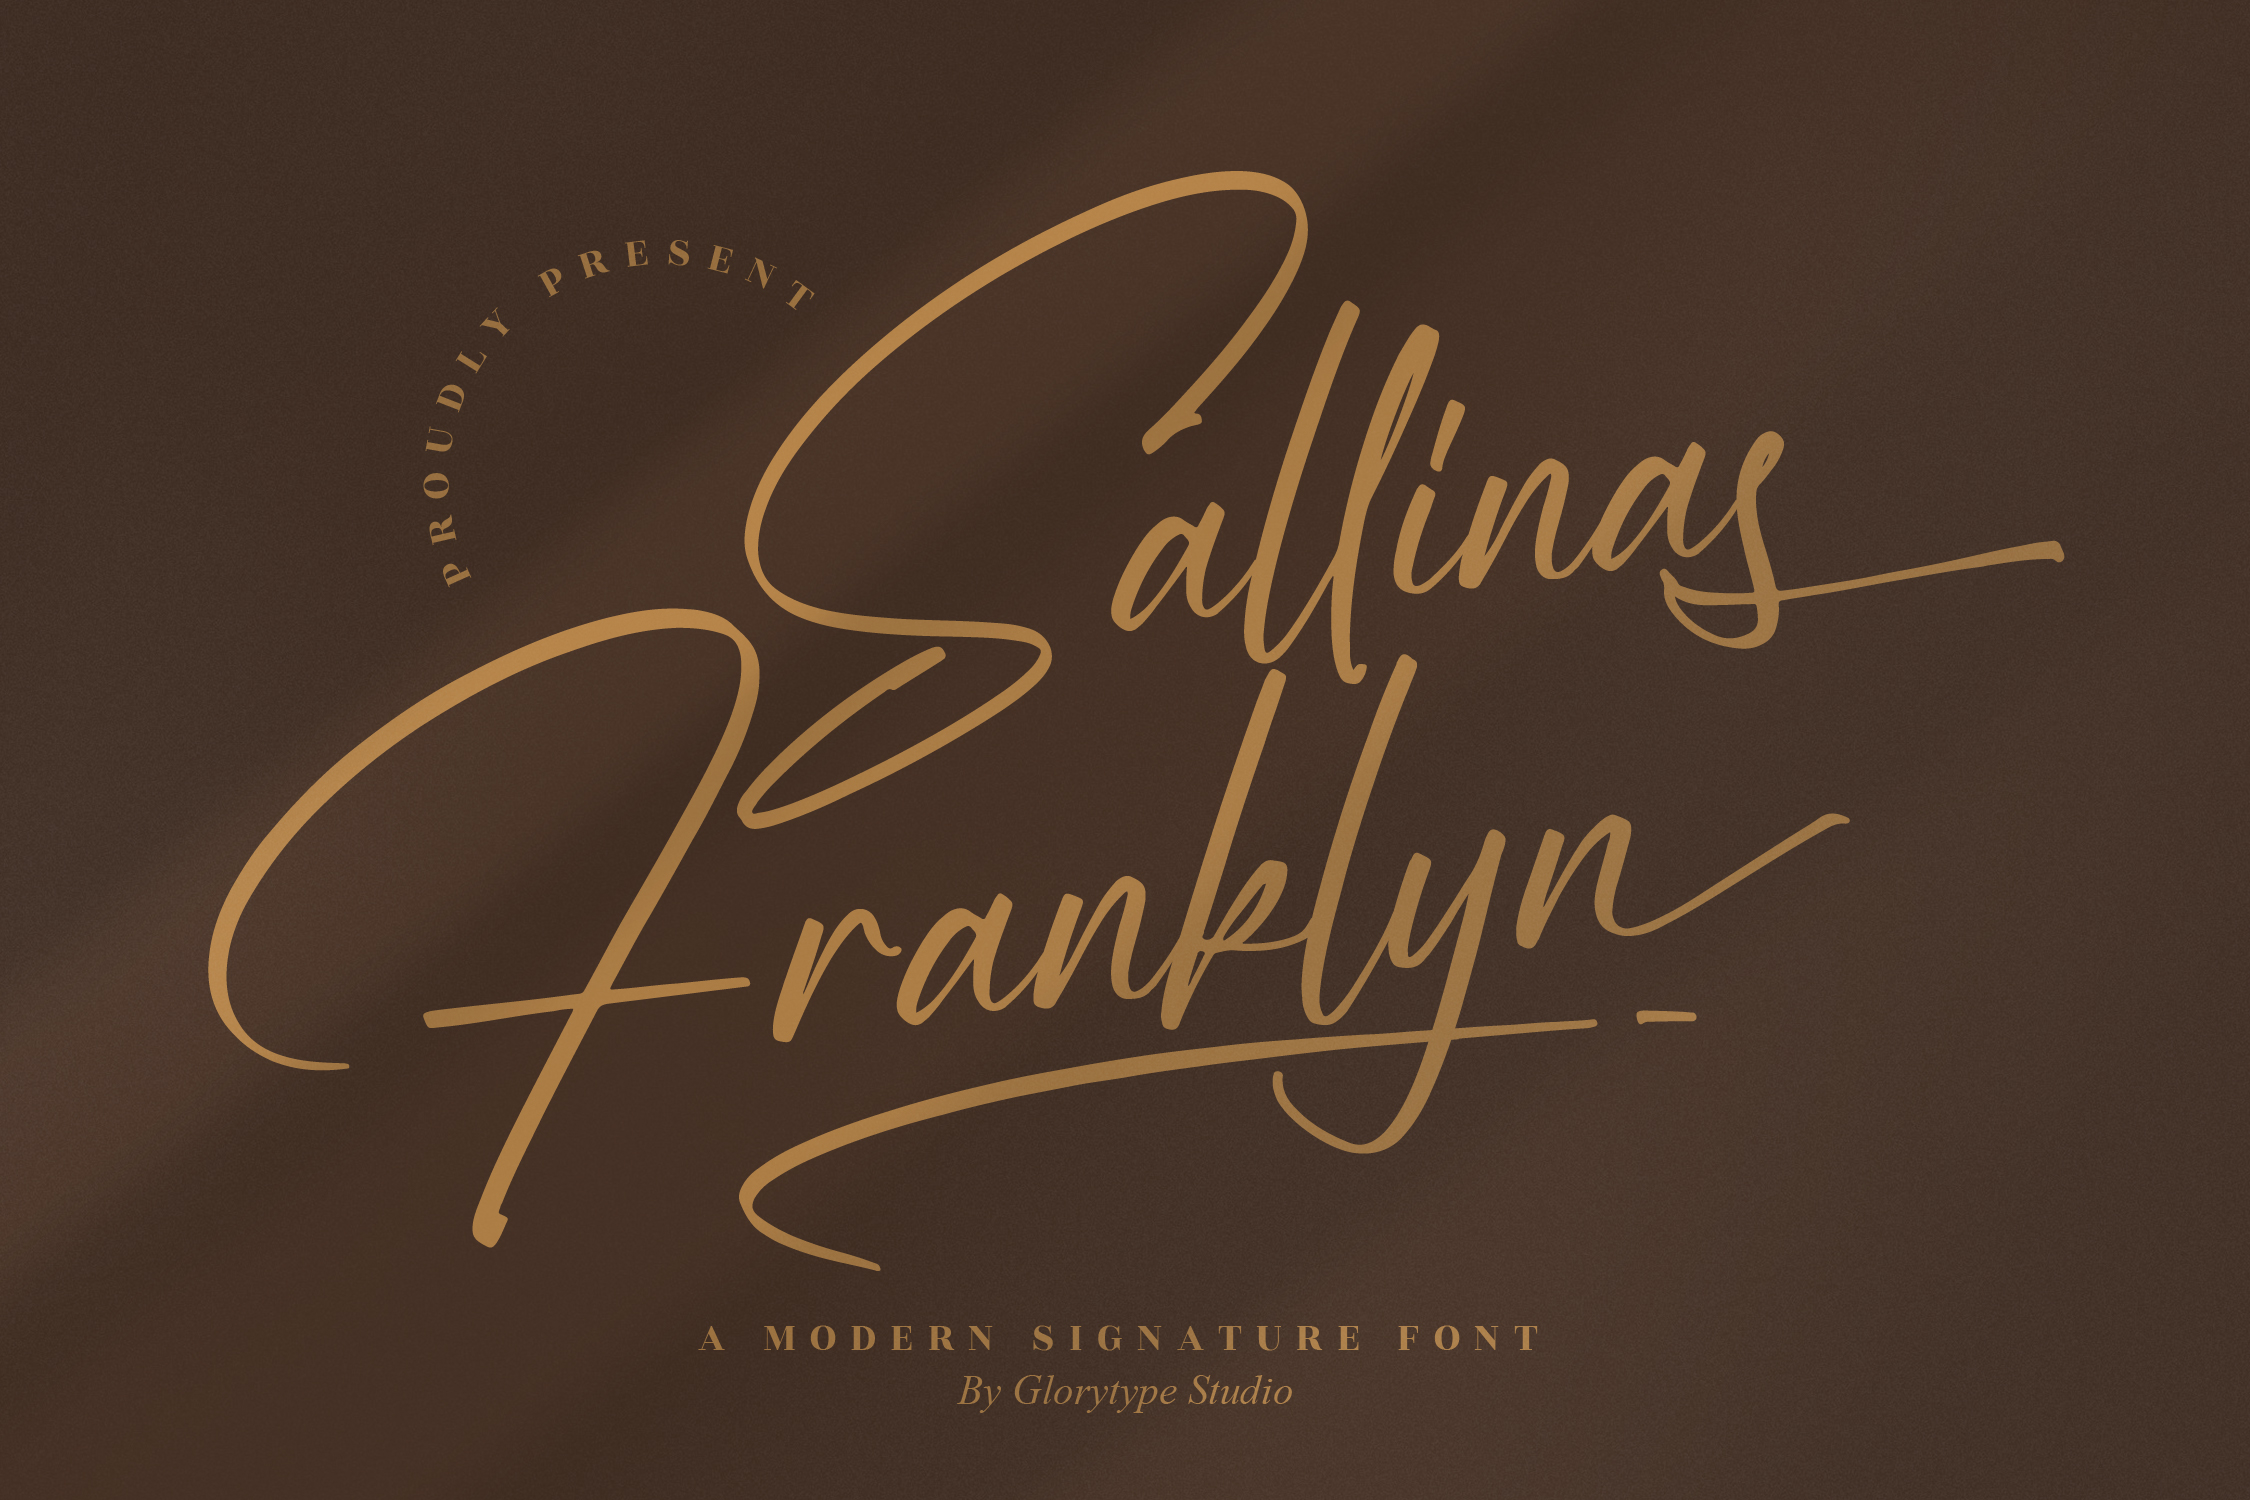 Sallinas Franklyn